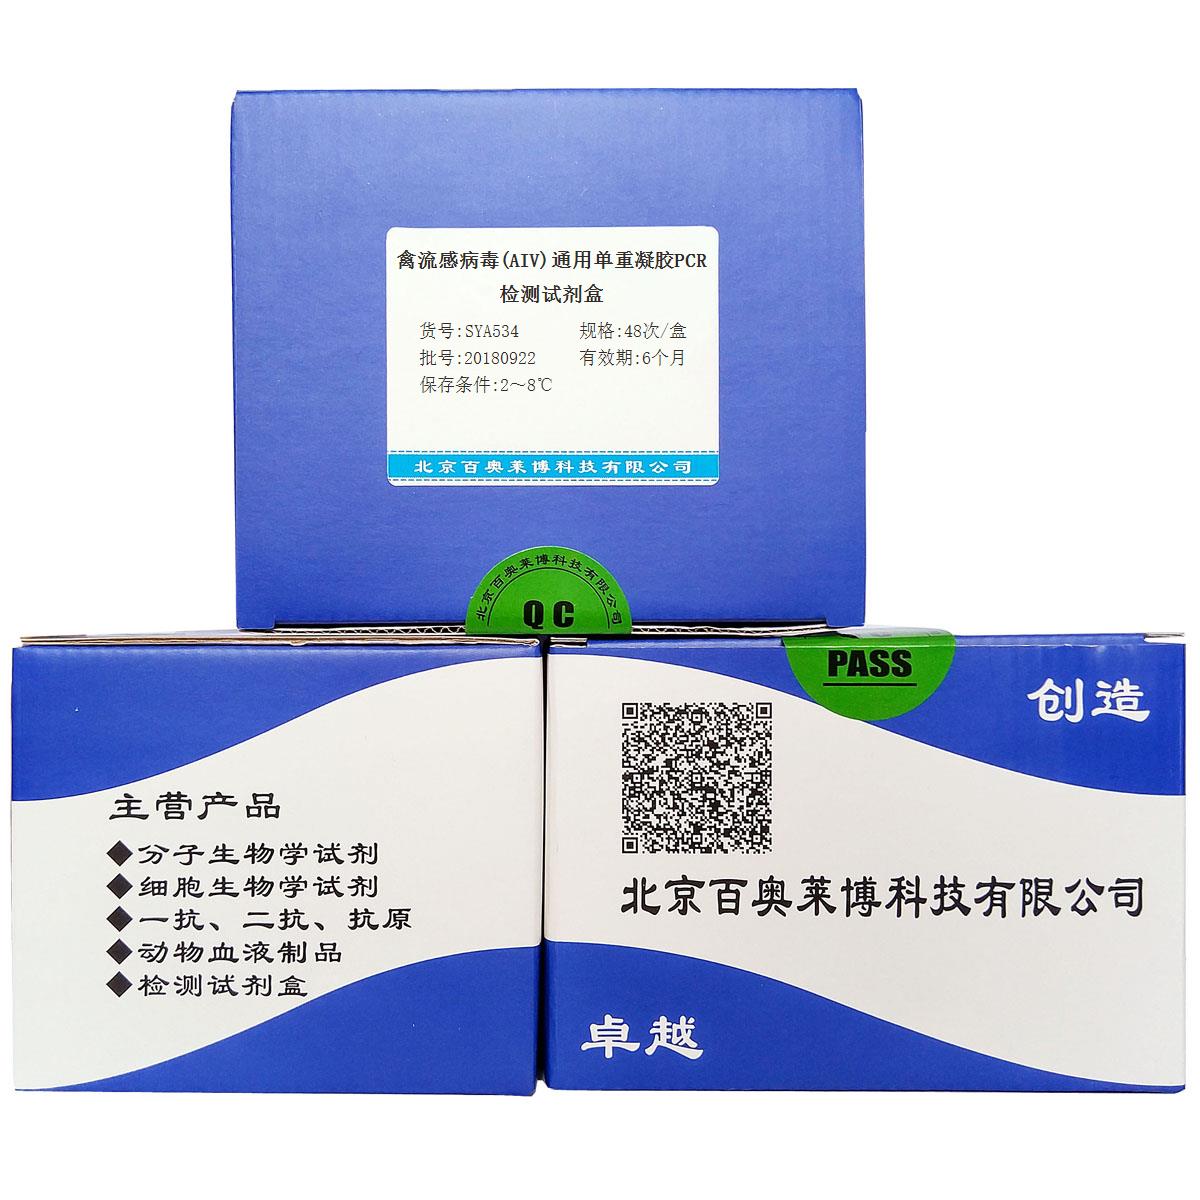 禽流感病毒(AIV)通用单重凝胶PCR检测试剂盒